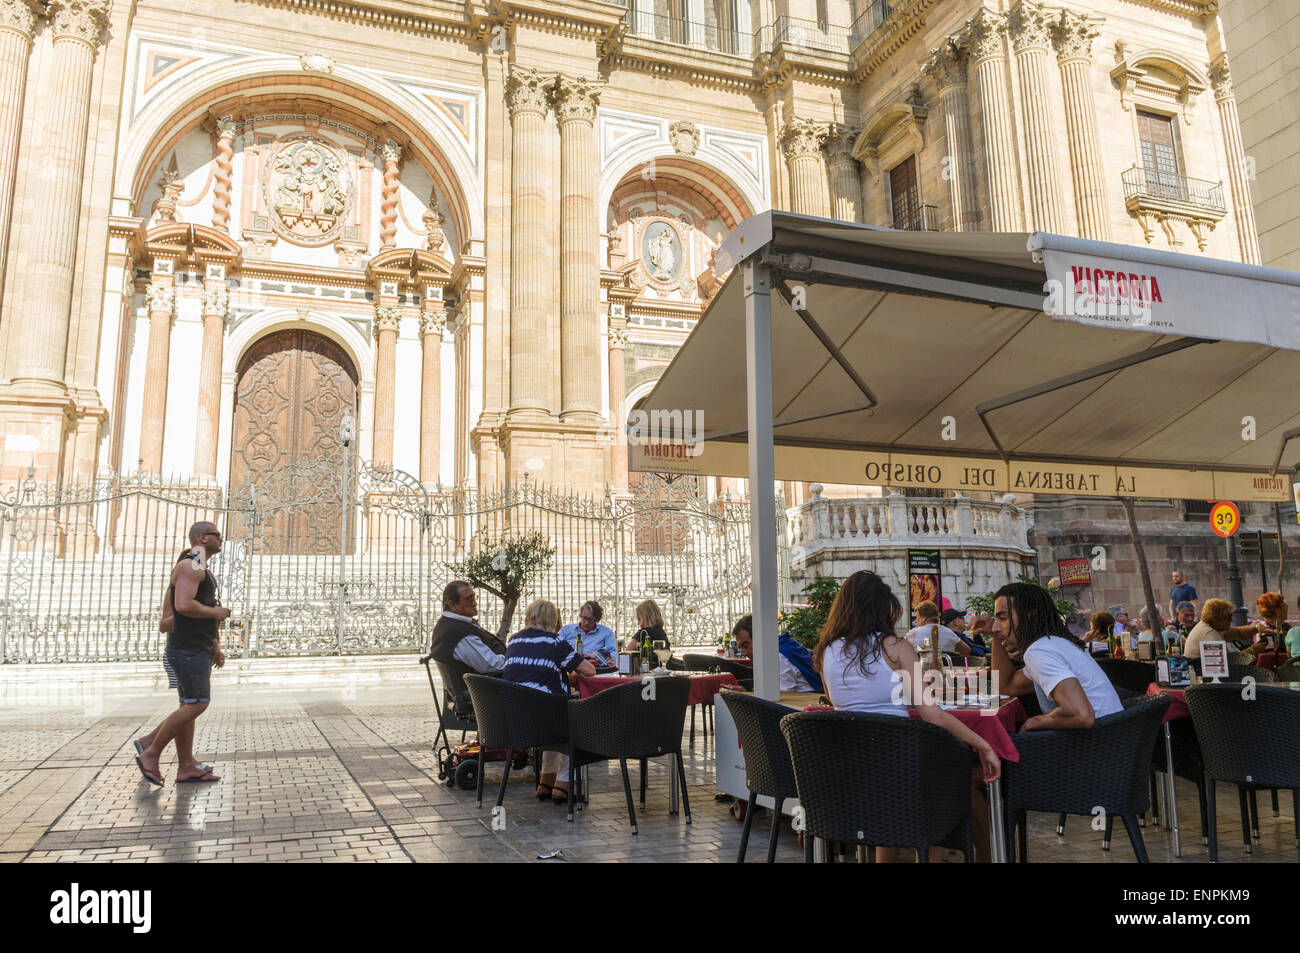 Malaga, Espagne. Les gens assis à une terrasse de la Cathédrale sur la place de l'évêque. Banque D'Images